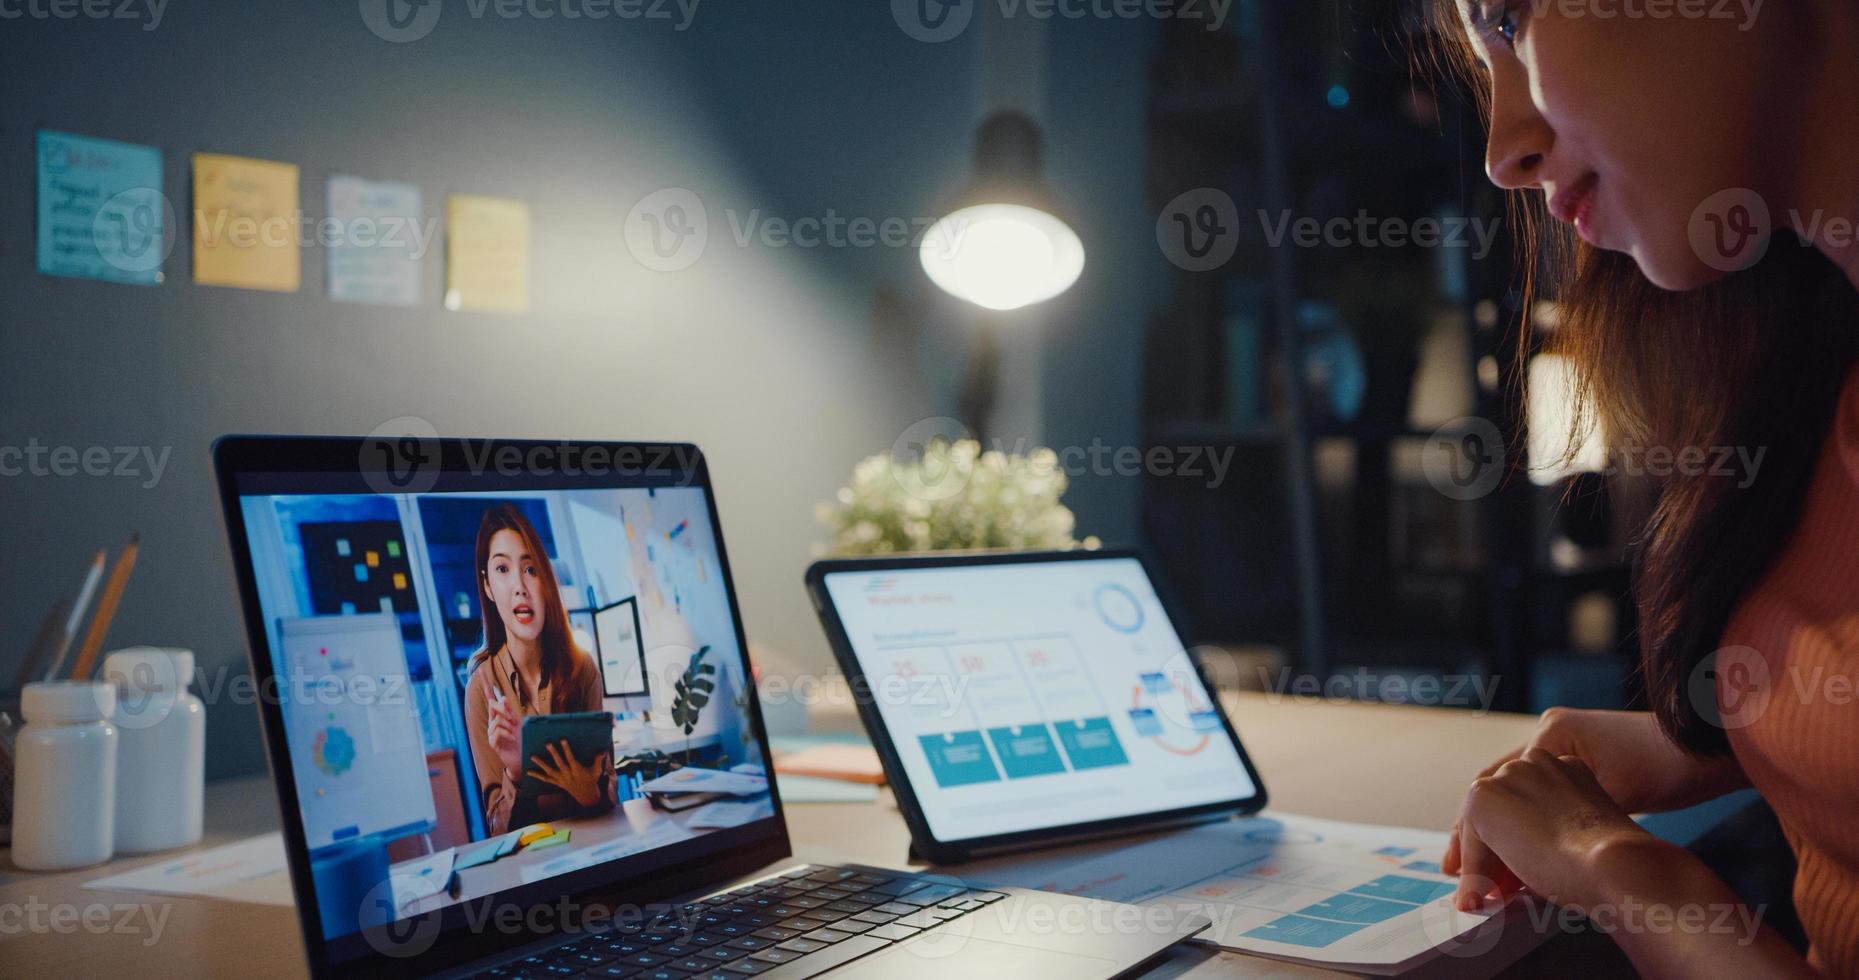 asiatisk kvinna som använder bärbar dator prata med kollegor om arbete i videosamtal medan hon arbetar hemma i vardagsrummet på natten. självisolering, social distansering, karantän för förebyggande av coronavirus. foto